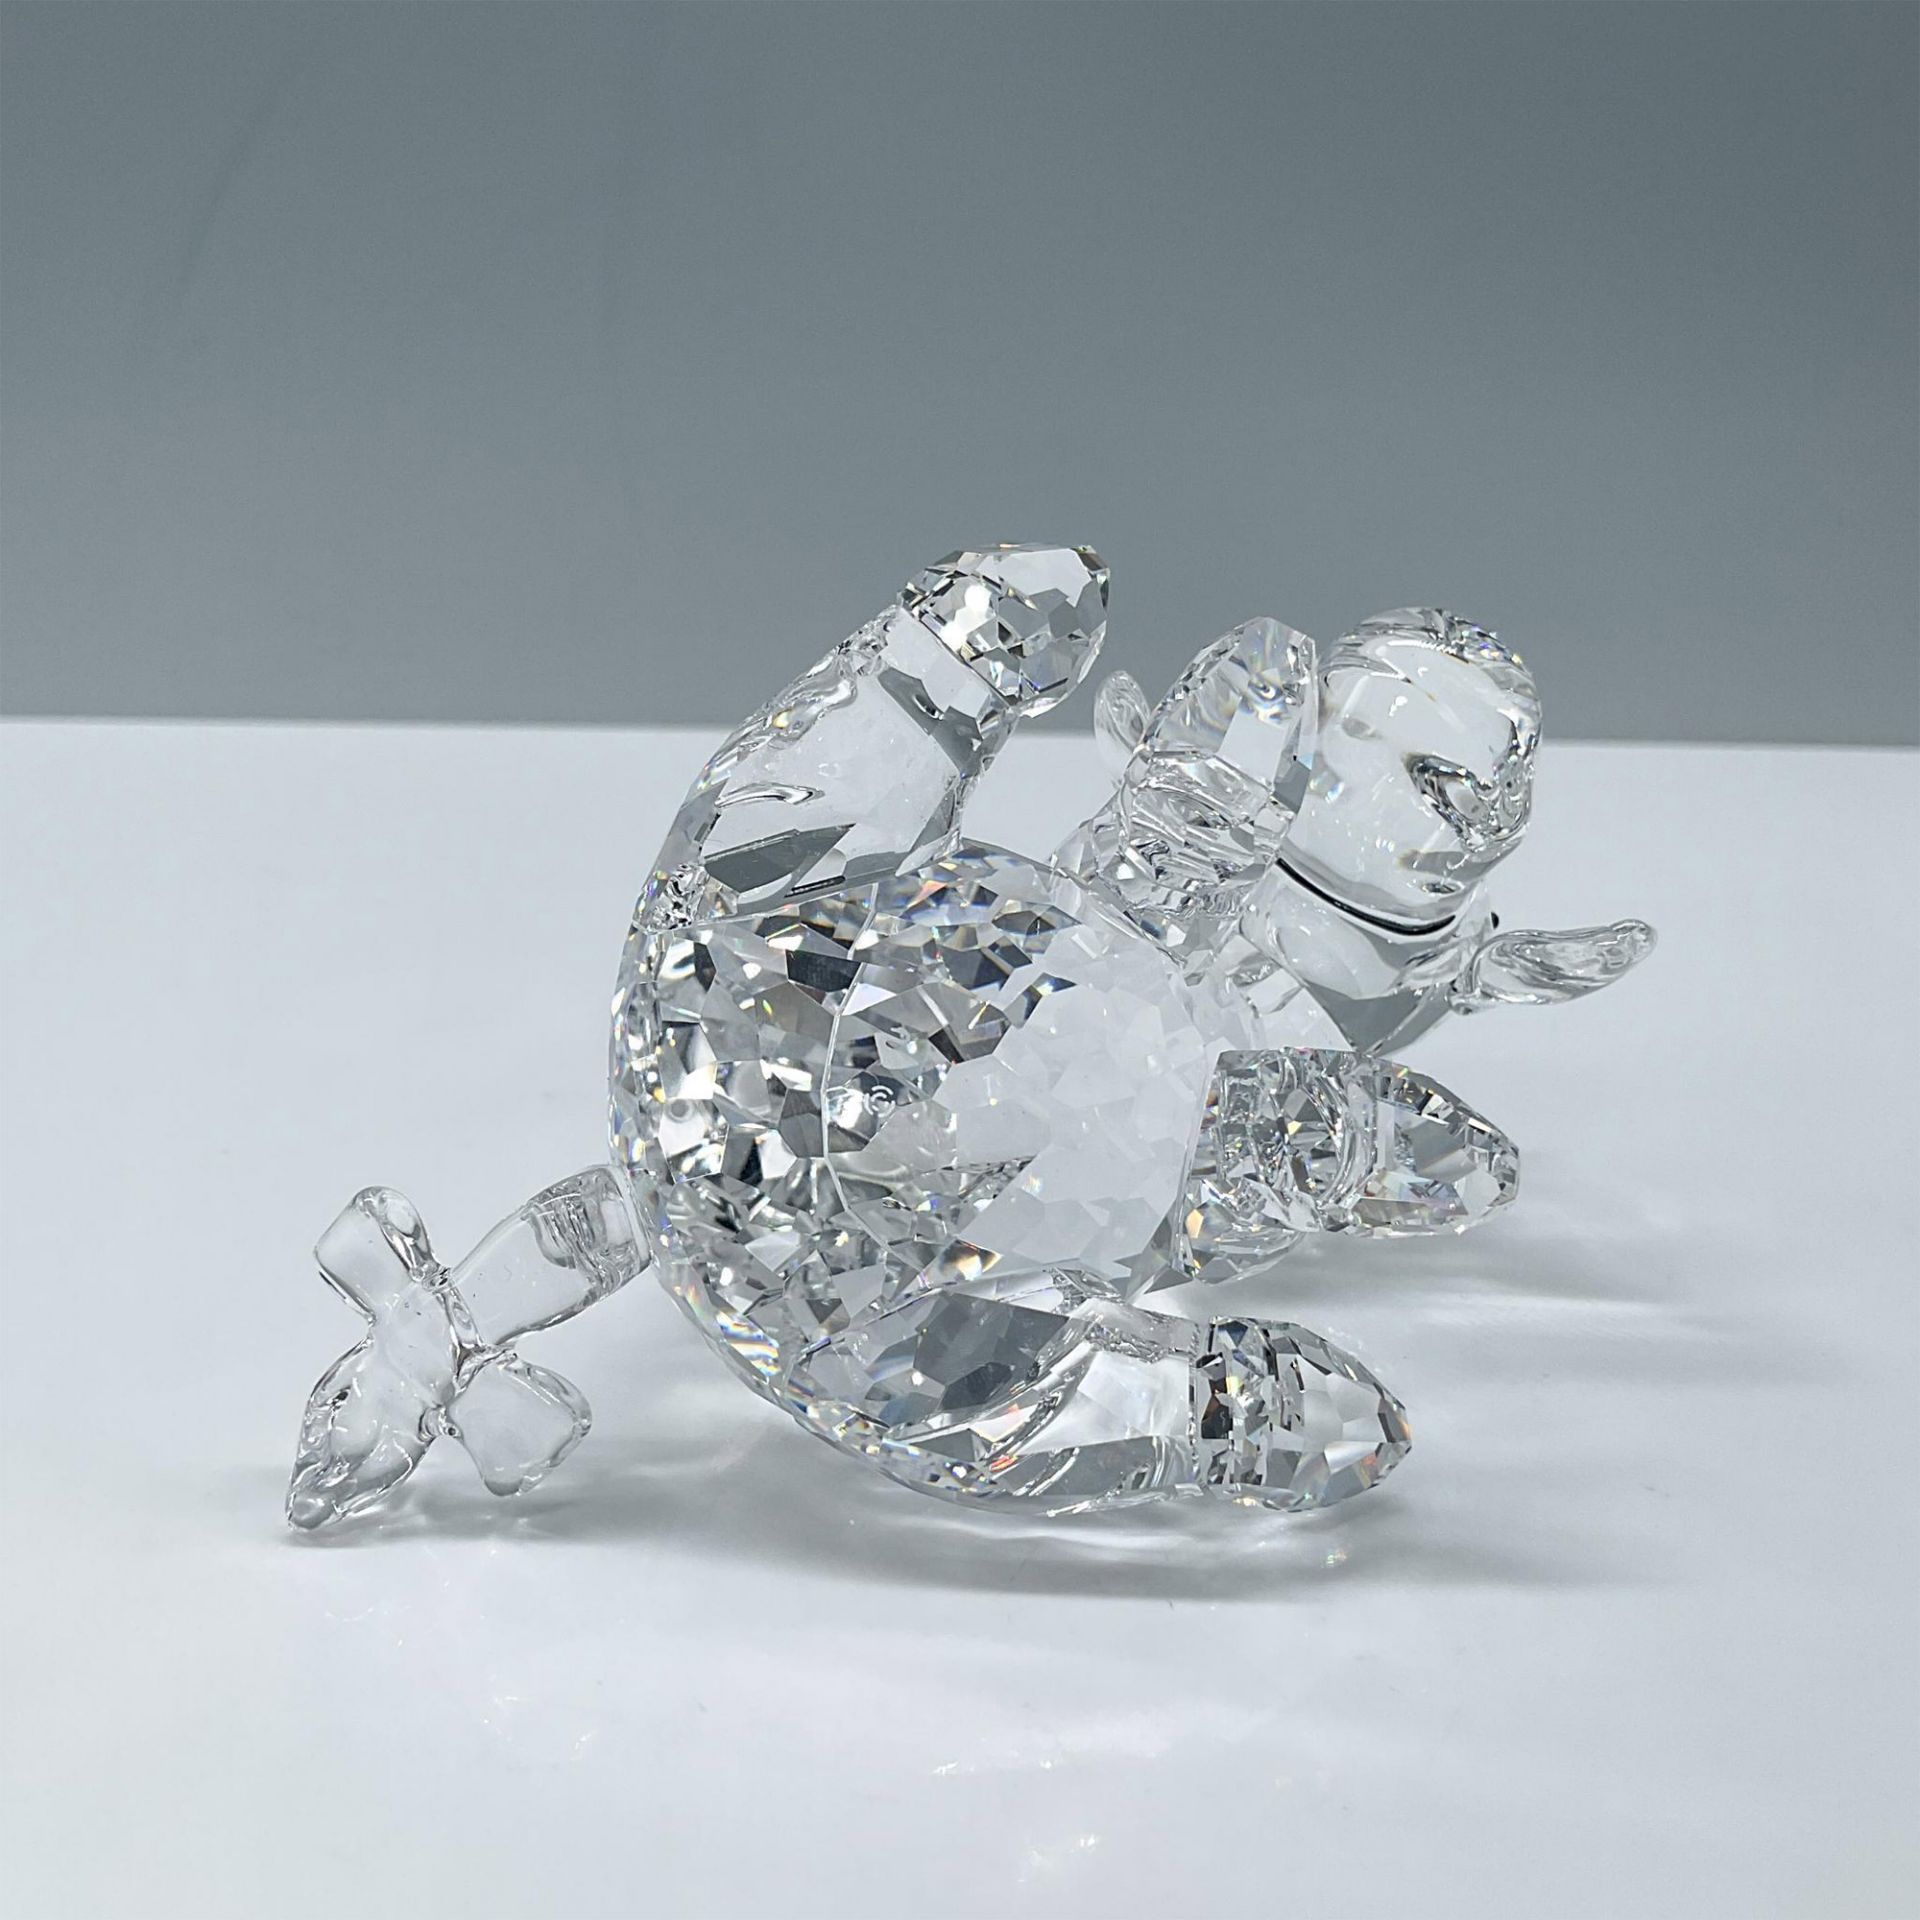 Swarovski Crystal Figurine, Eeyore - Image 3 of 4